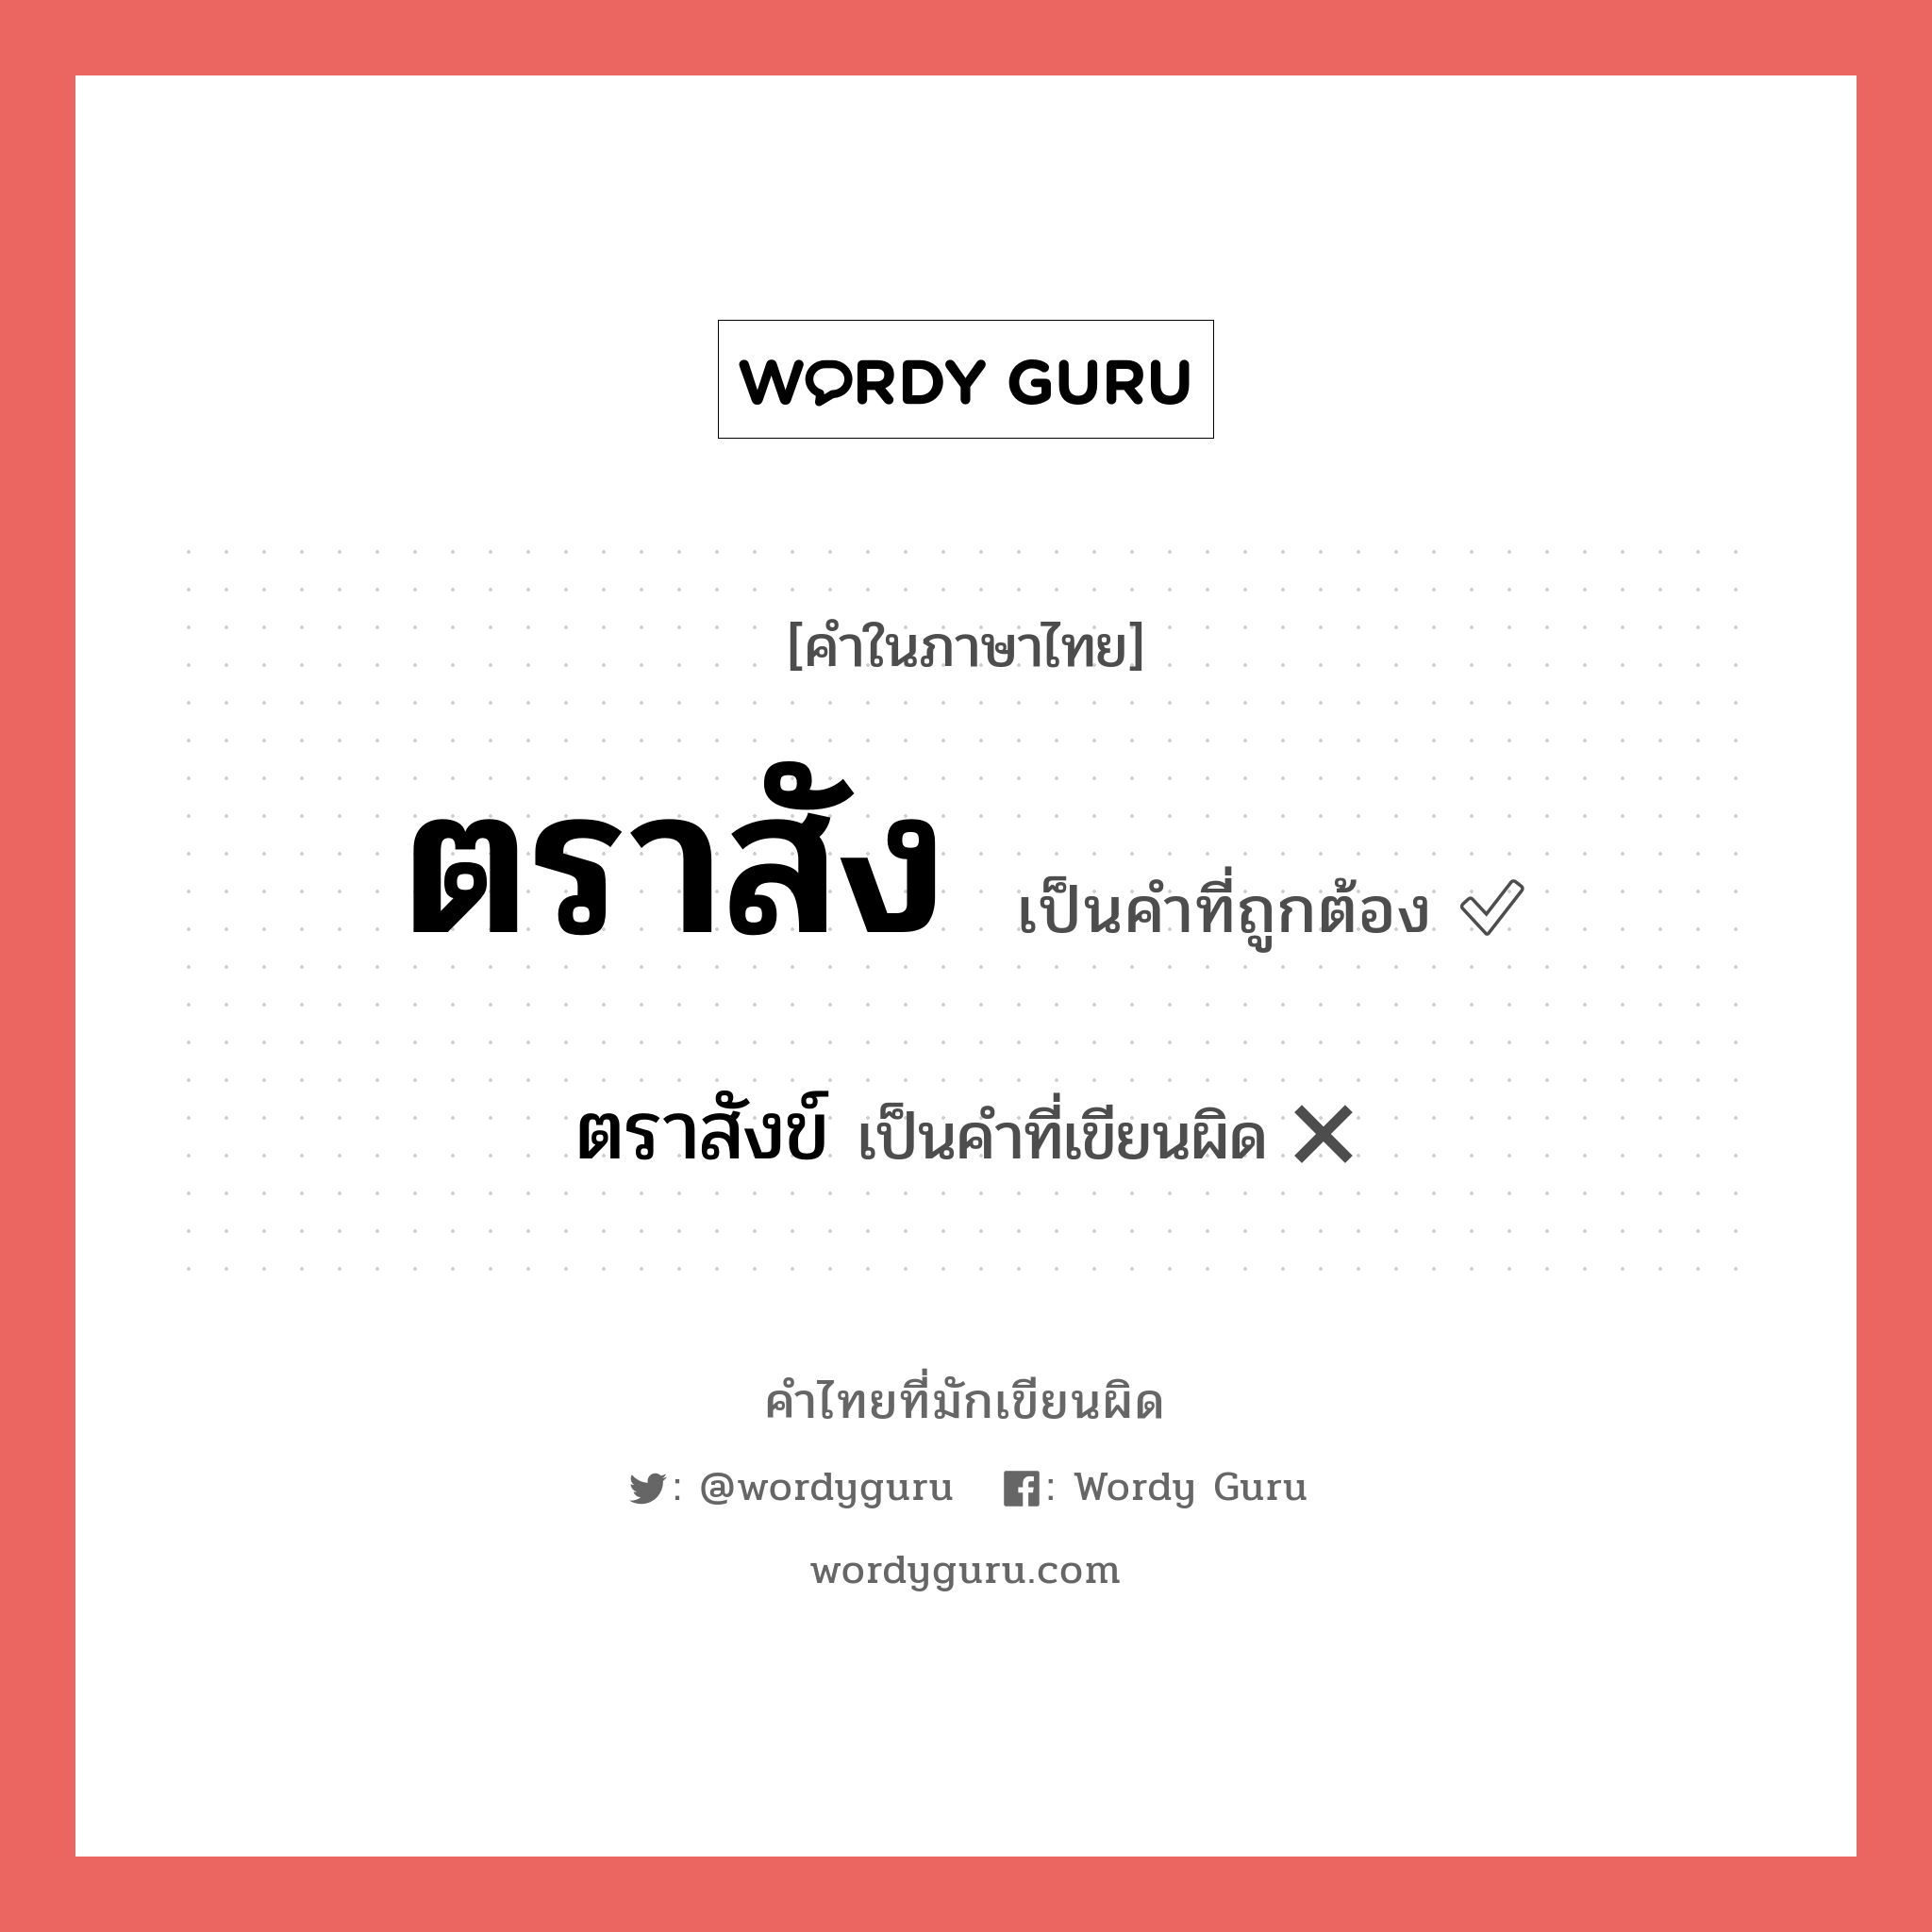 ตราสัง หรือ ตราสังข์ คำไหนเขียนถูก?, คำในภาษาไทยที่มักเขียนผิด ตราสัง คำที่ผิด ❌ ตราสังข์